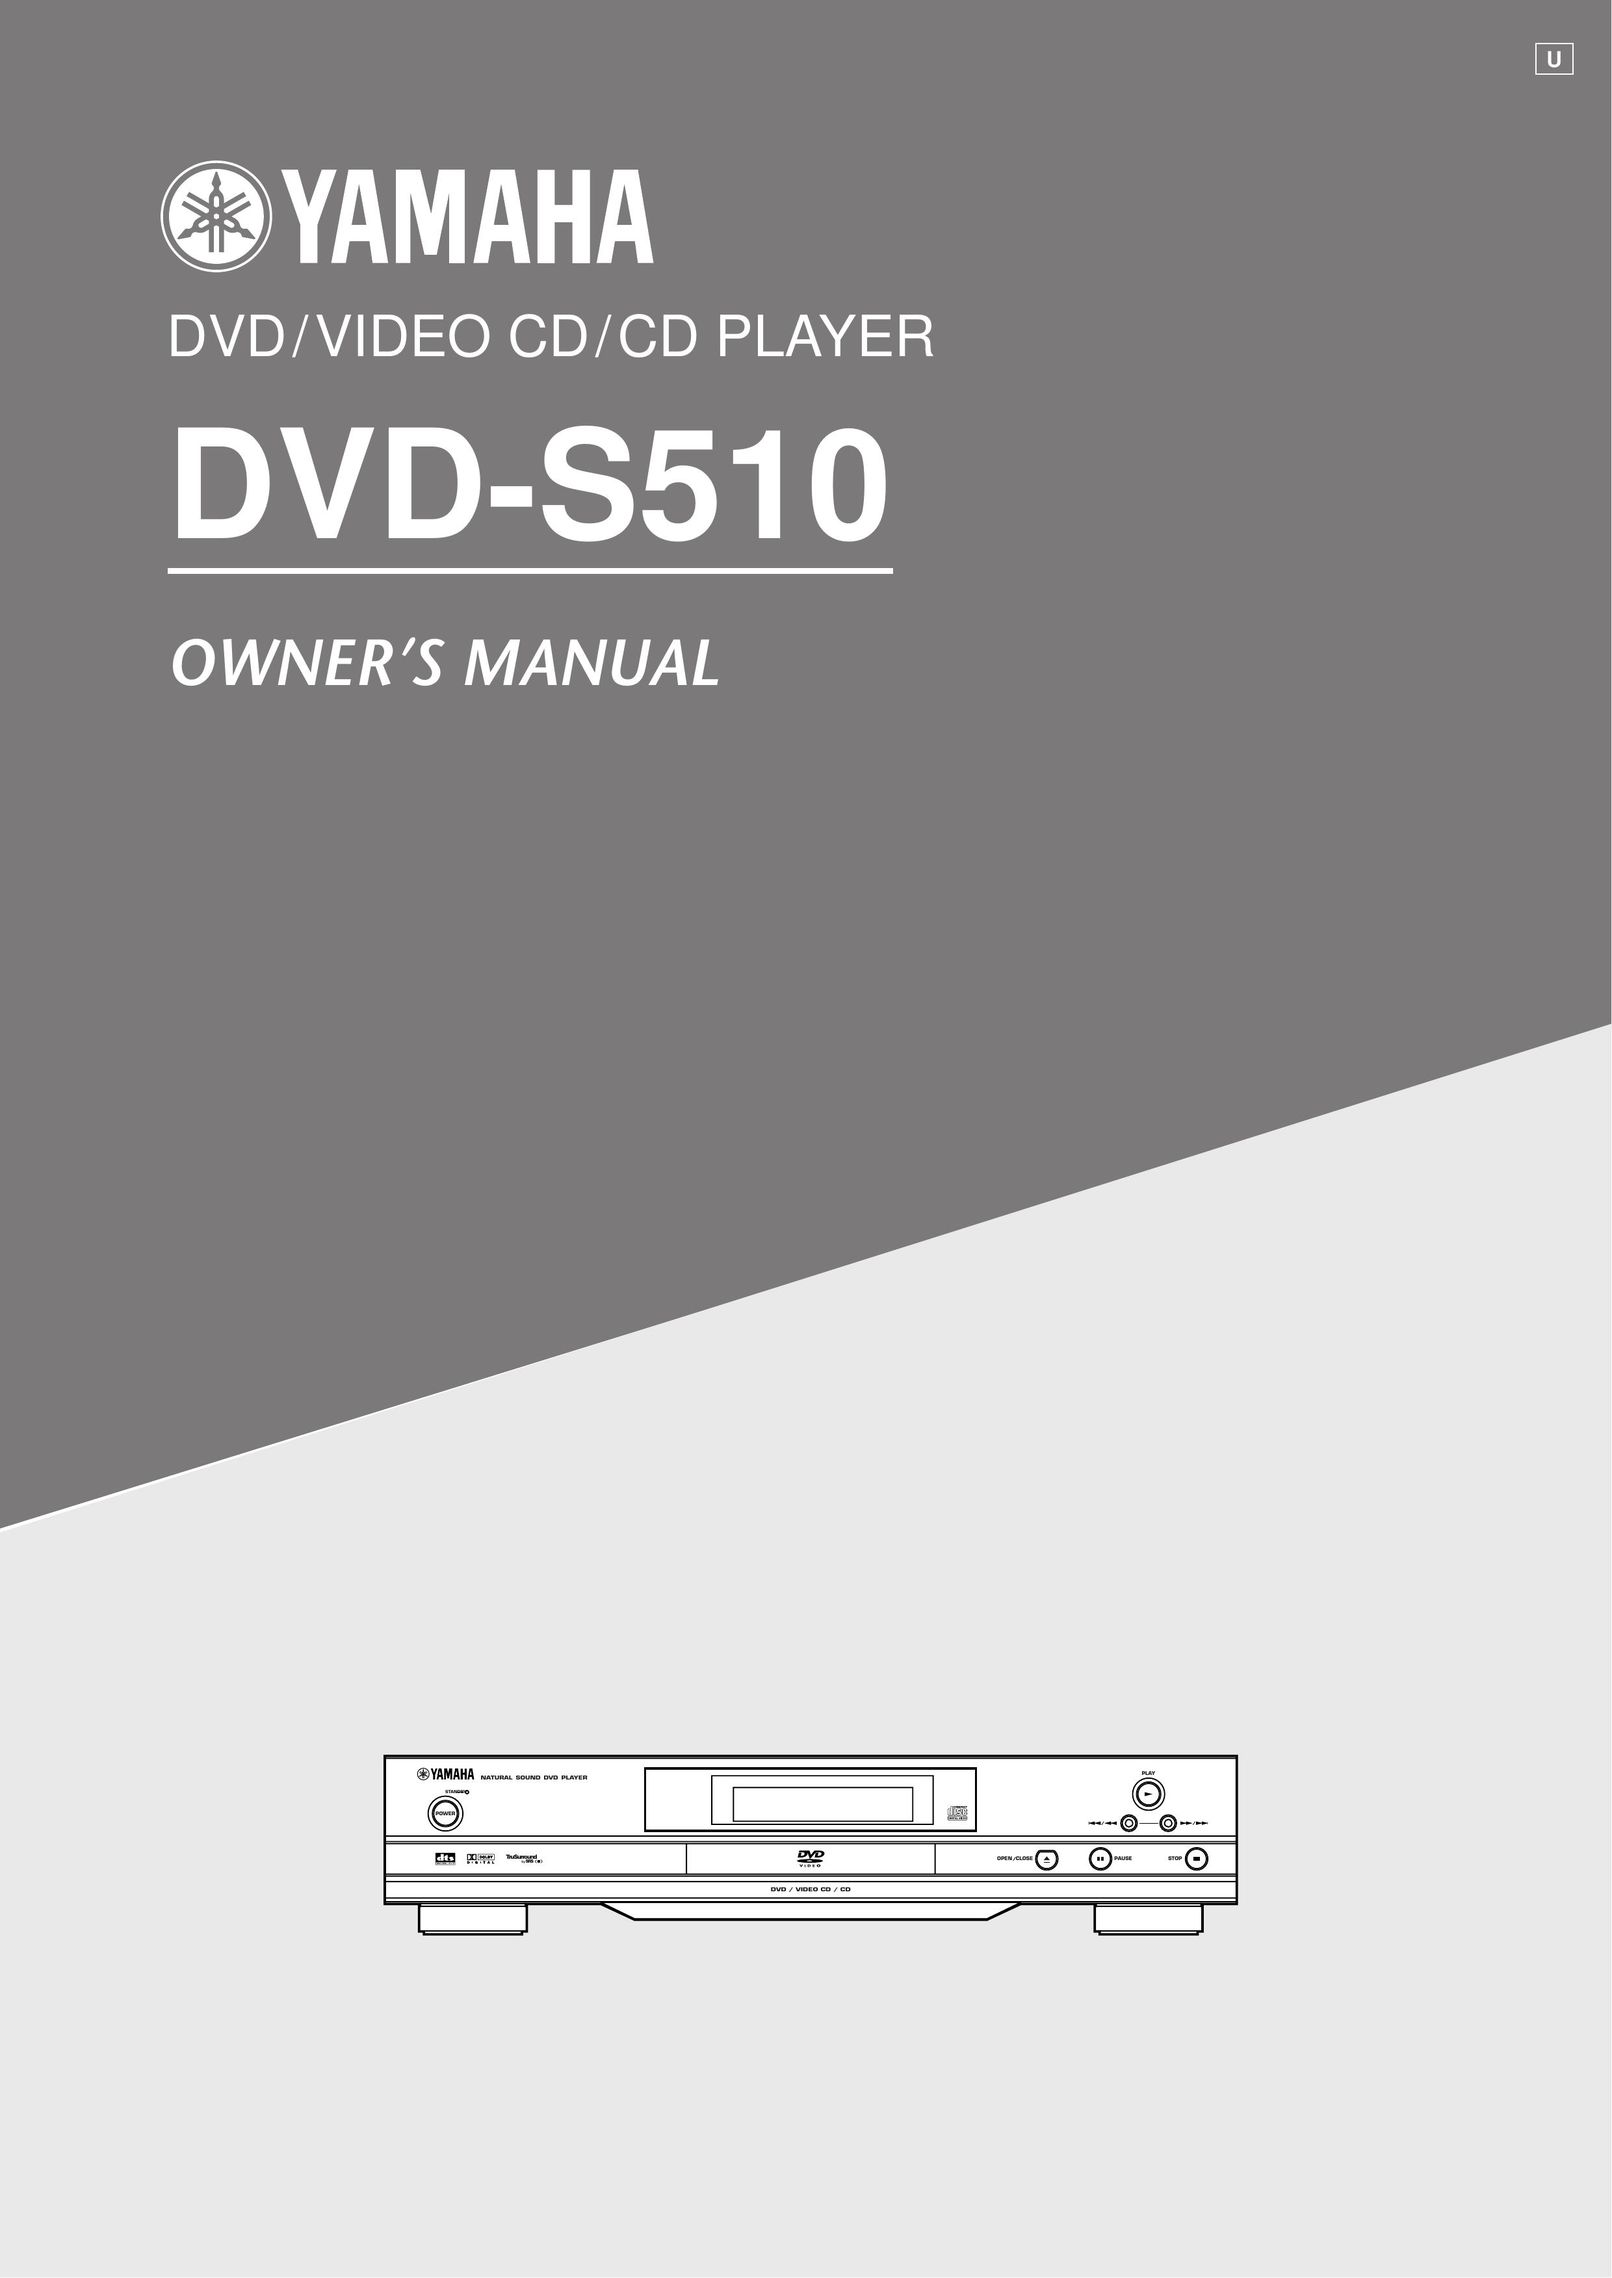 Yamaha DVD-S510 DVD Player User Manual